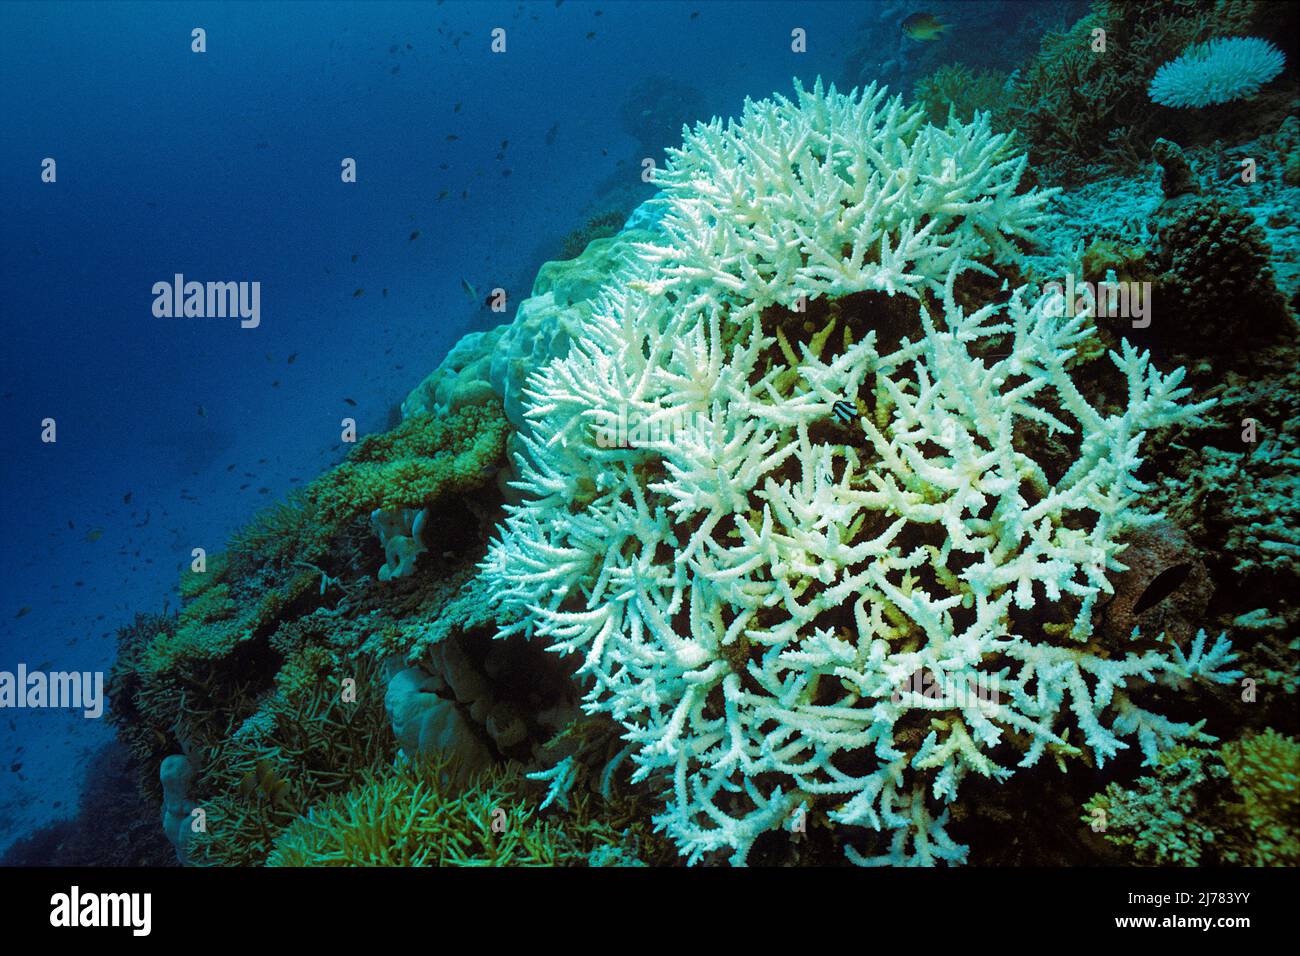 Gebleichte Staghornkorallen, Korallenbleiche, Folgen der globalen Erwärmung, Korallenriff auf den Malediven, Indischer Ozean, Asien Stockfoto